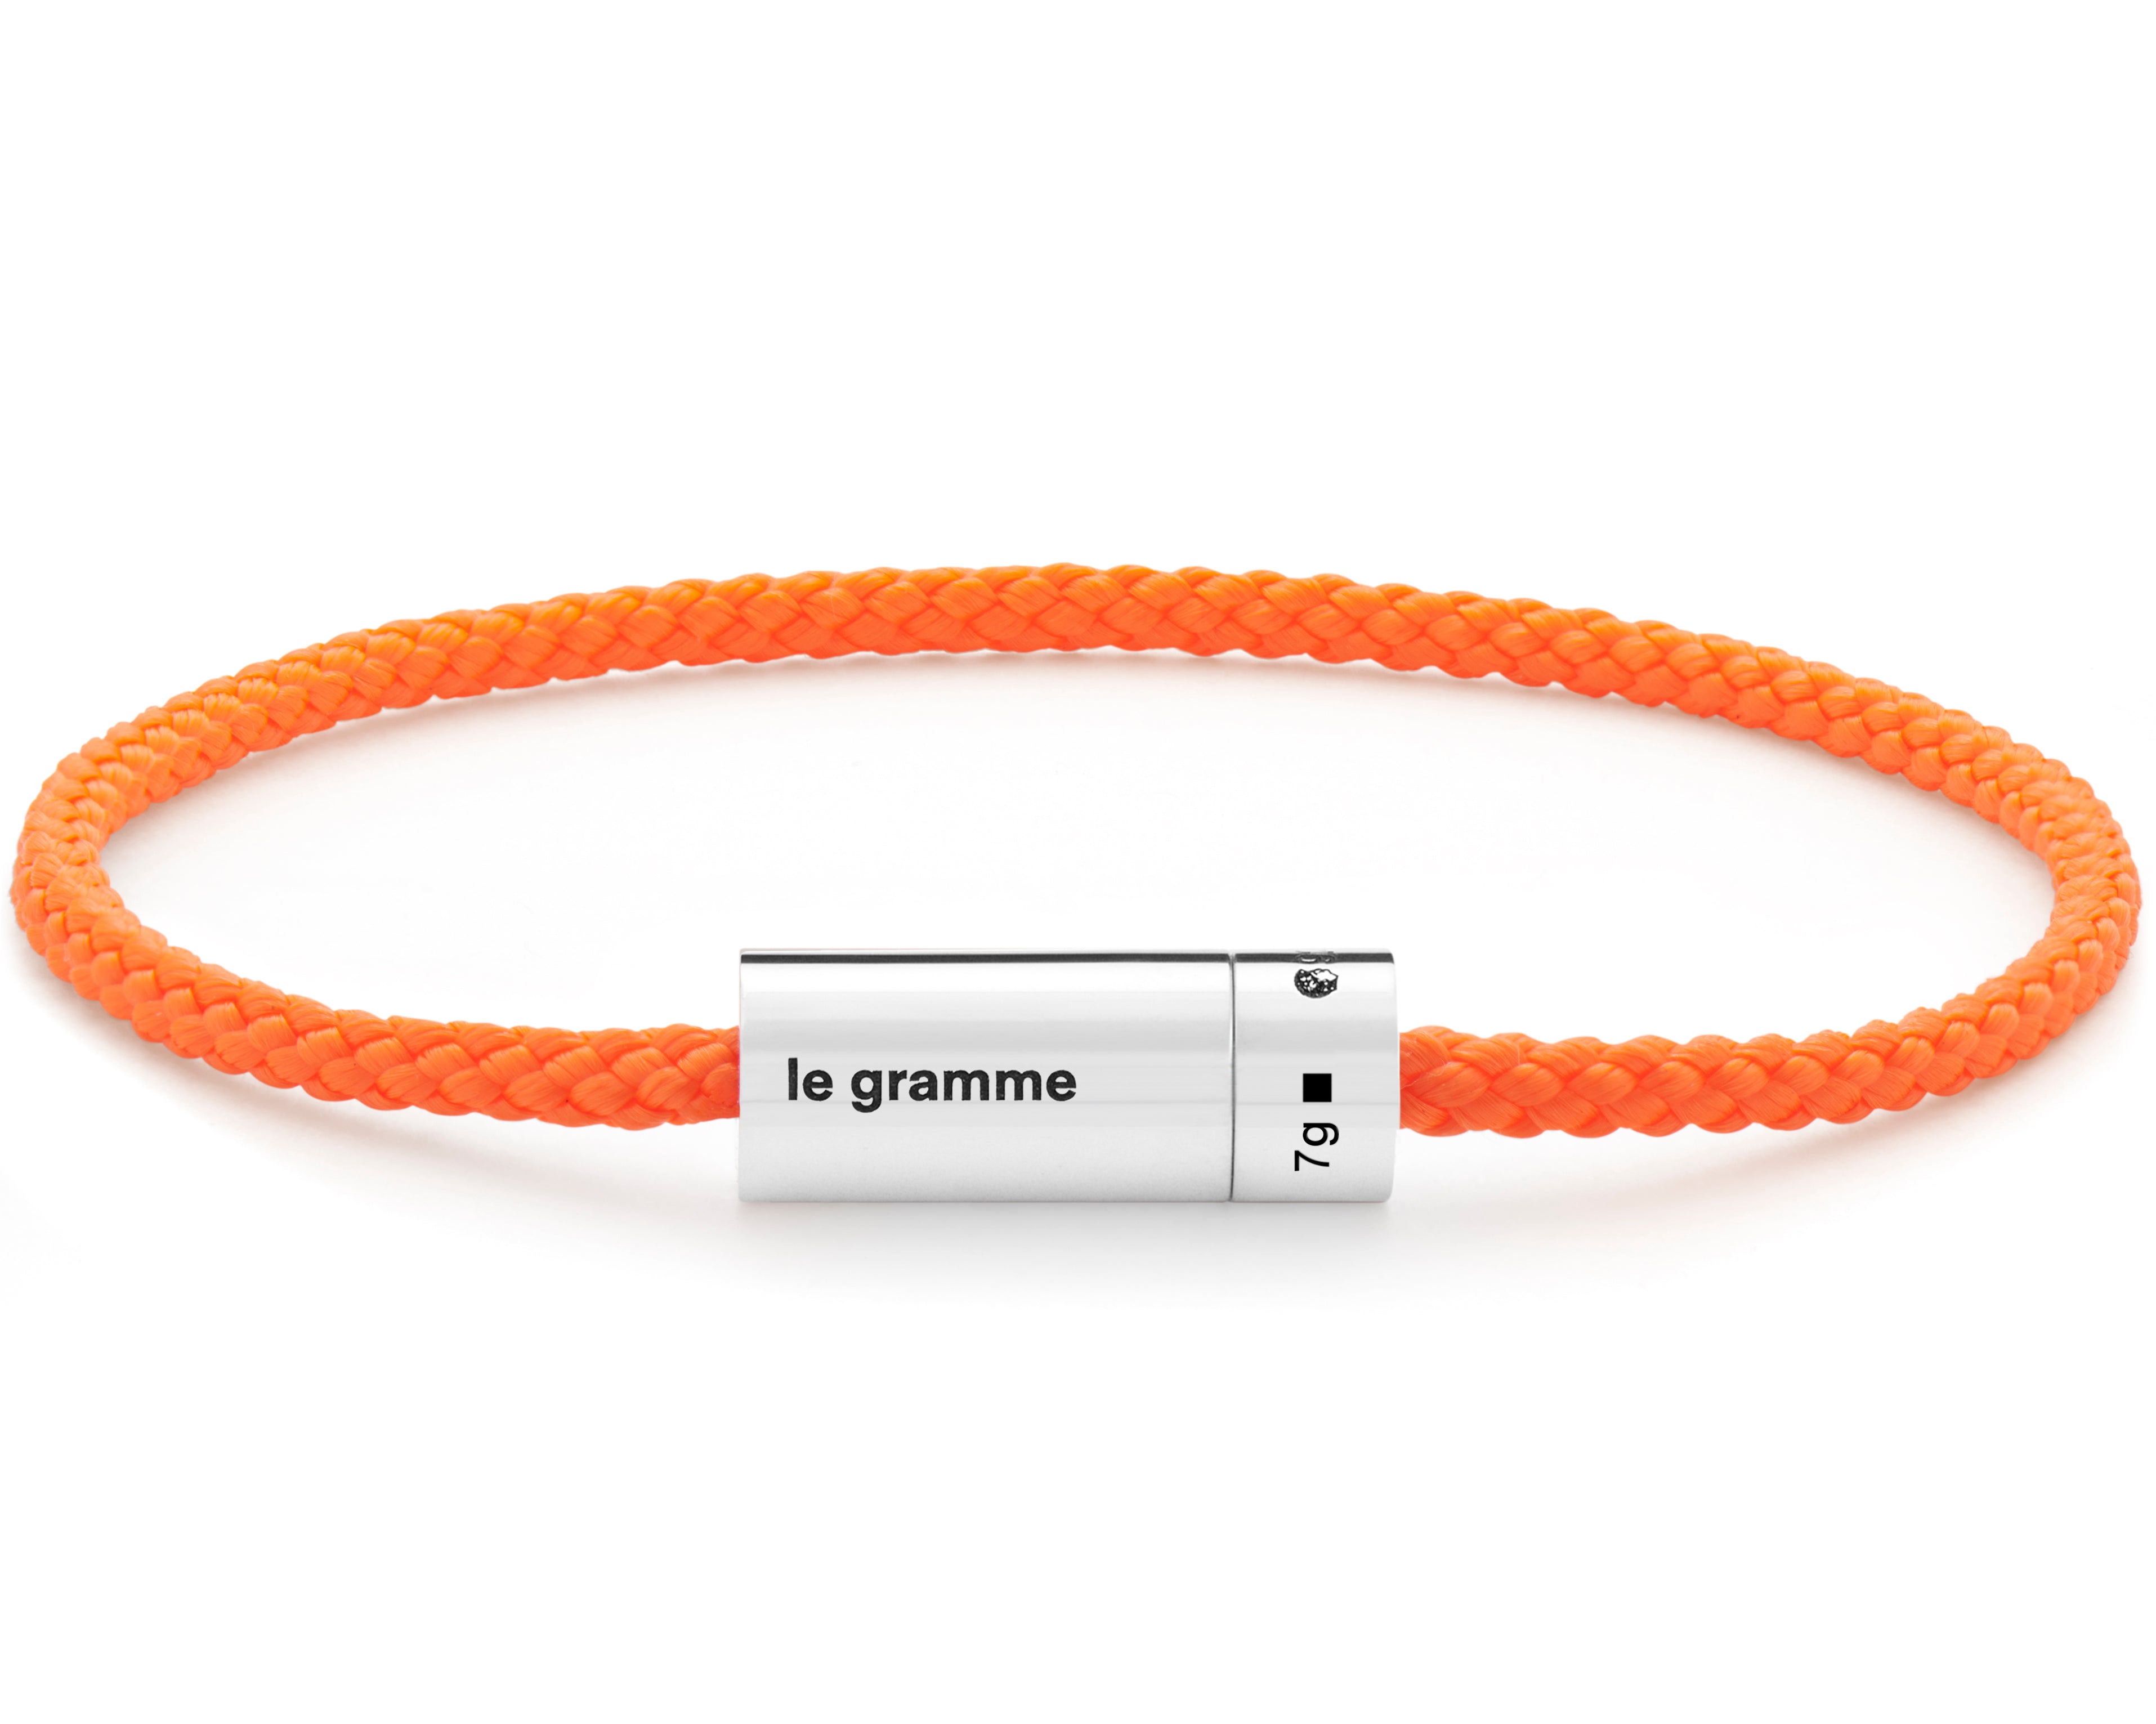 7g nato – orange le gramme bracelet cable le